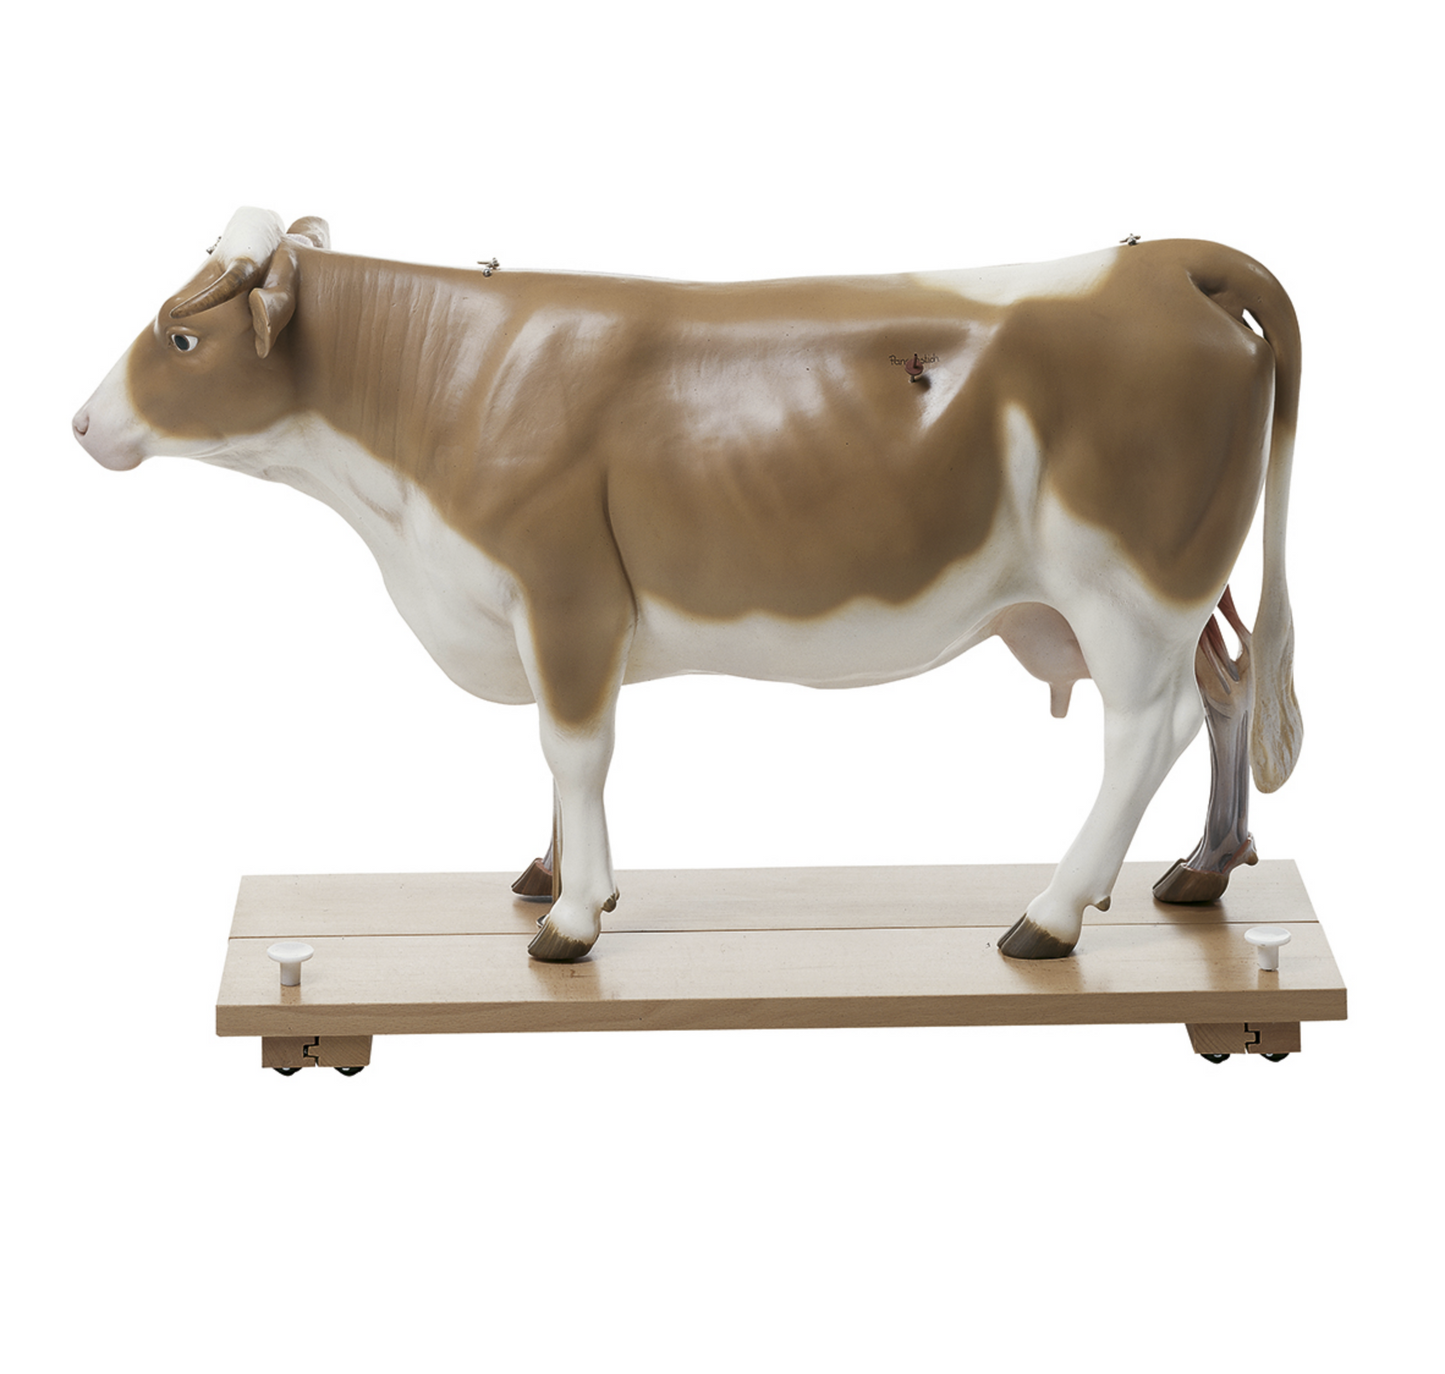 Modell av en ko i högsta kvalitet och 1/3 av naturlig storlek. Kan delas upp i 13 delar